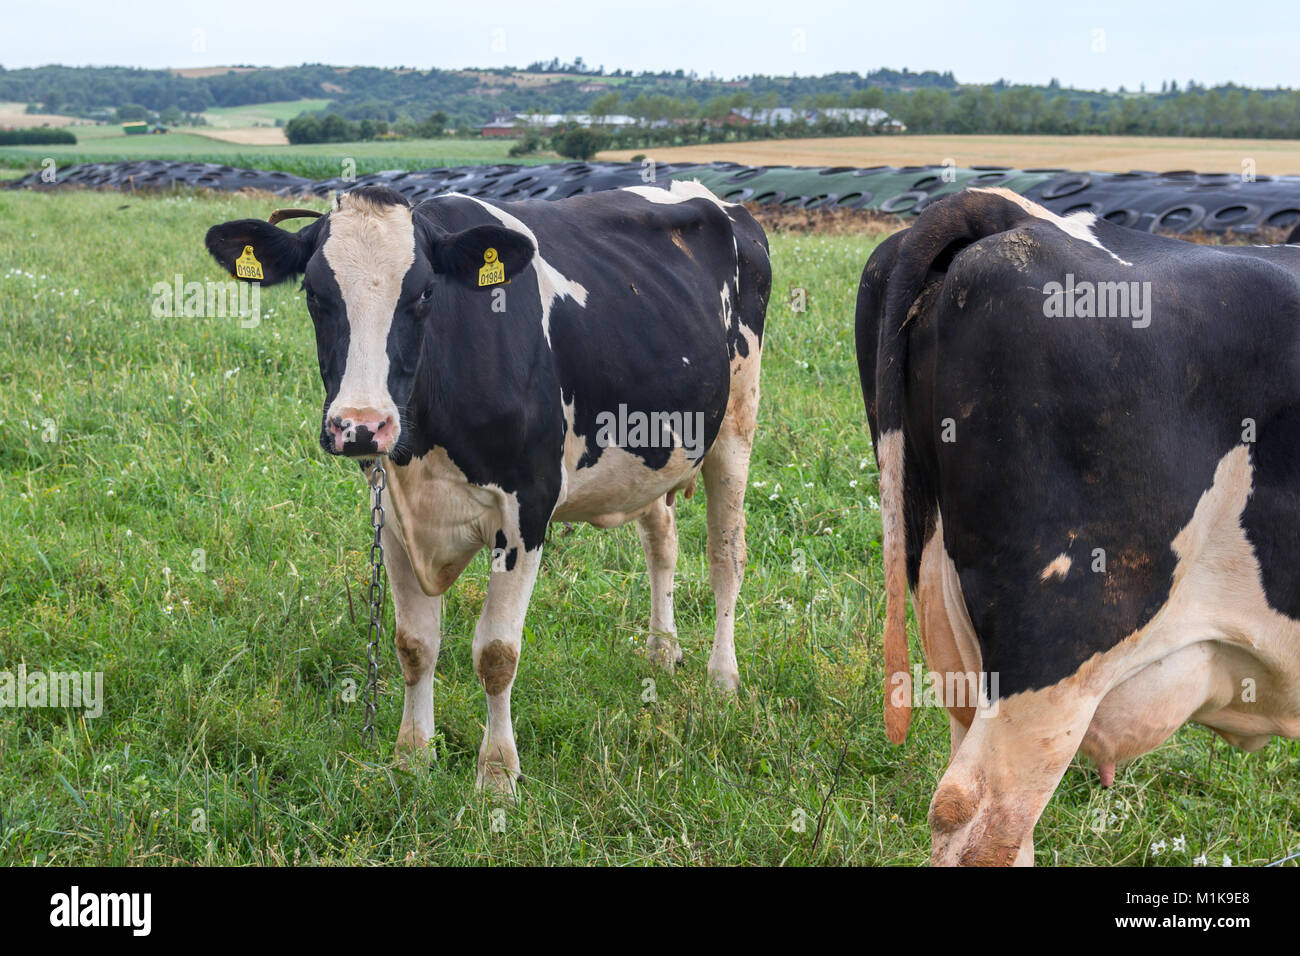 Danish black and white cattle on grass; Fur, Denmark Stock Photo